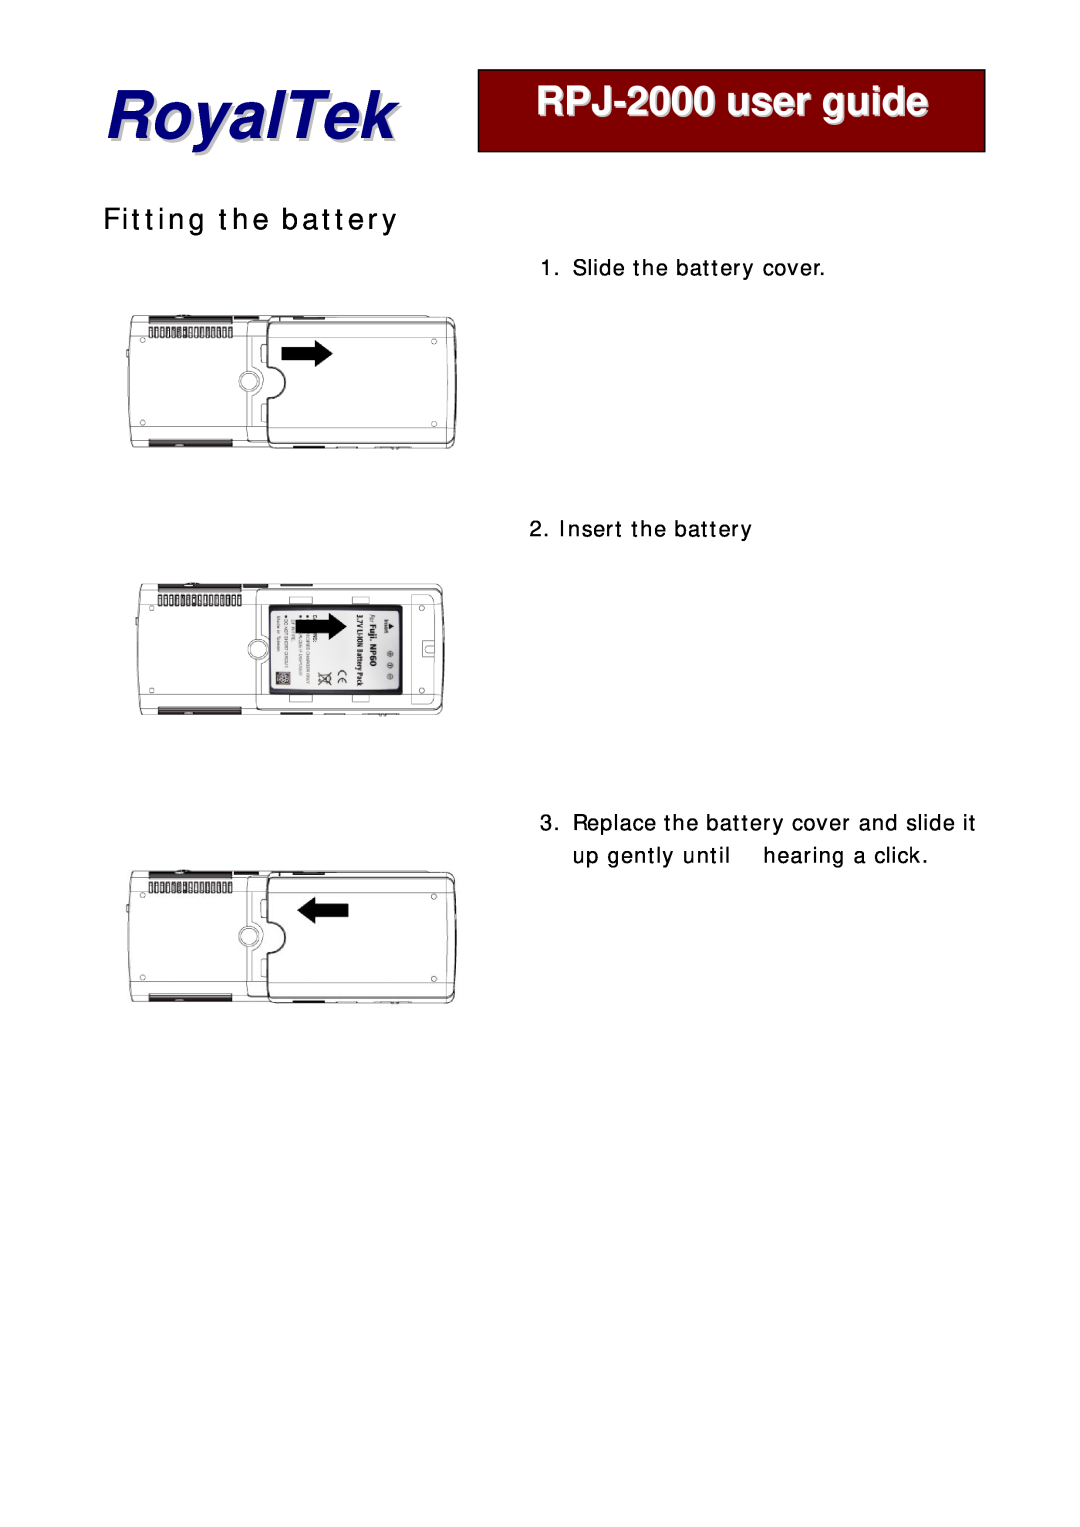 RoyalTek manual Fitting the battery, Slide the battery cover 2. Insert the battery, RoyalTek, RPJ-2000user guide 